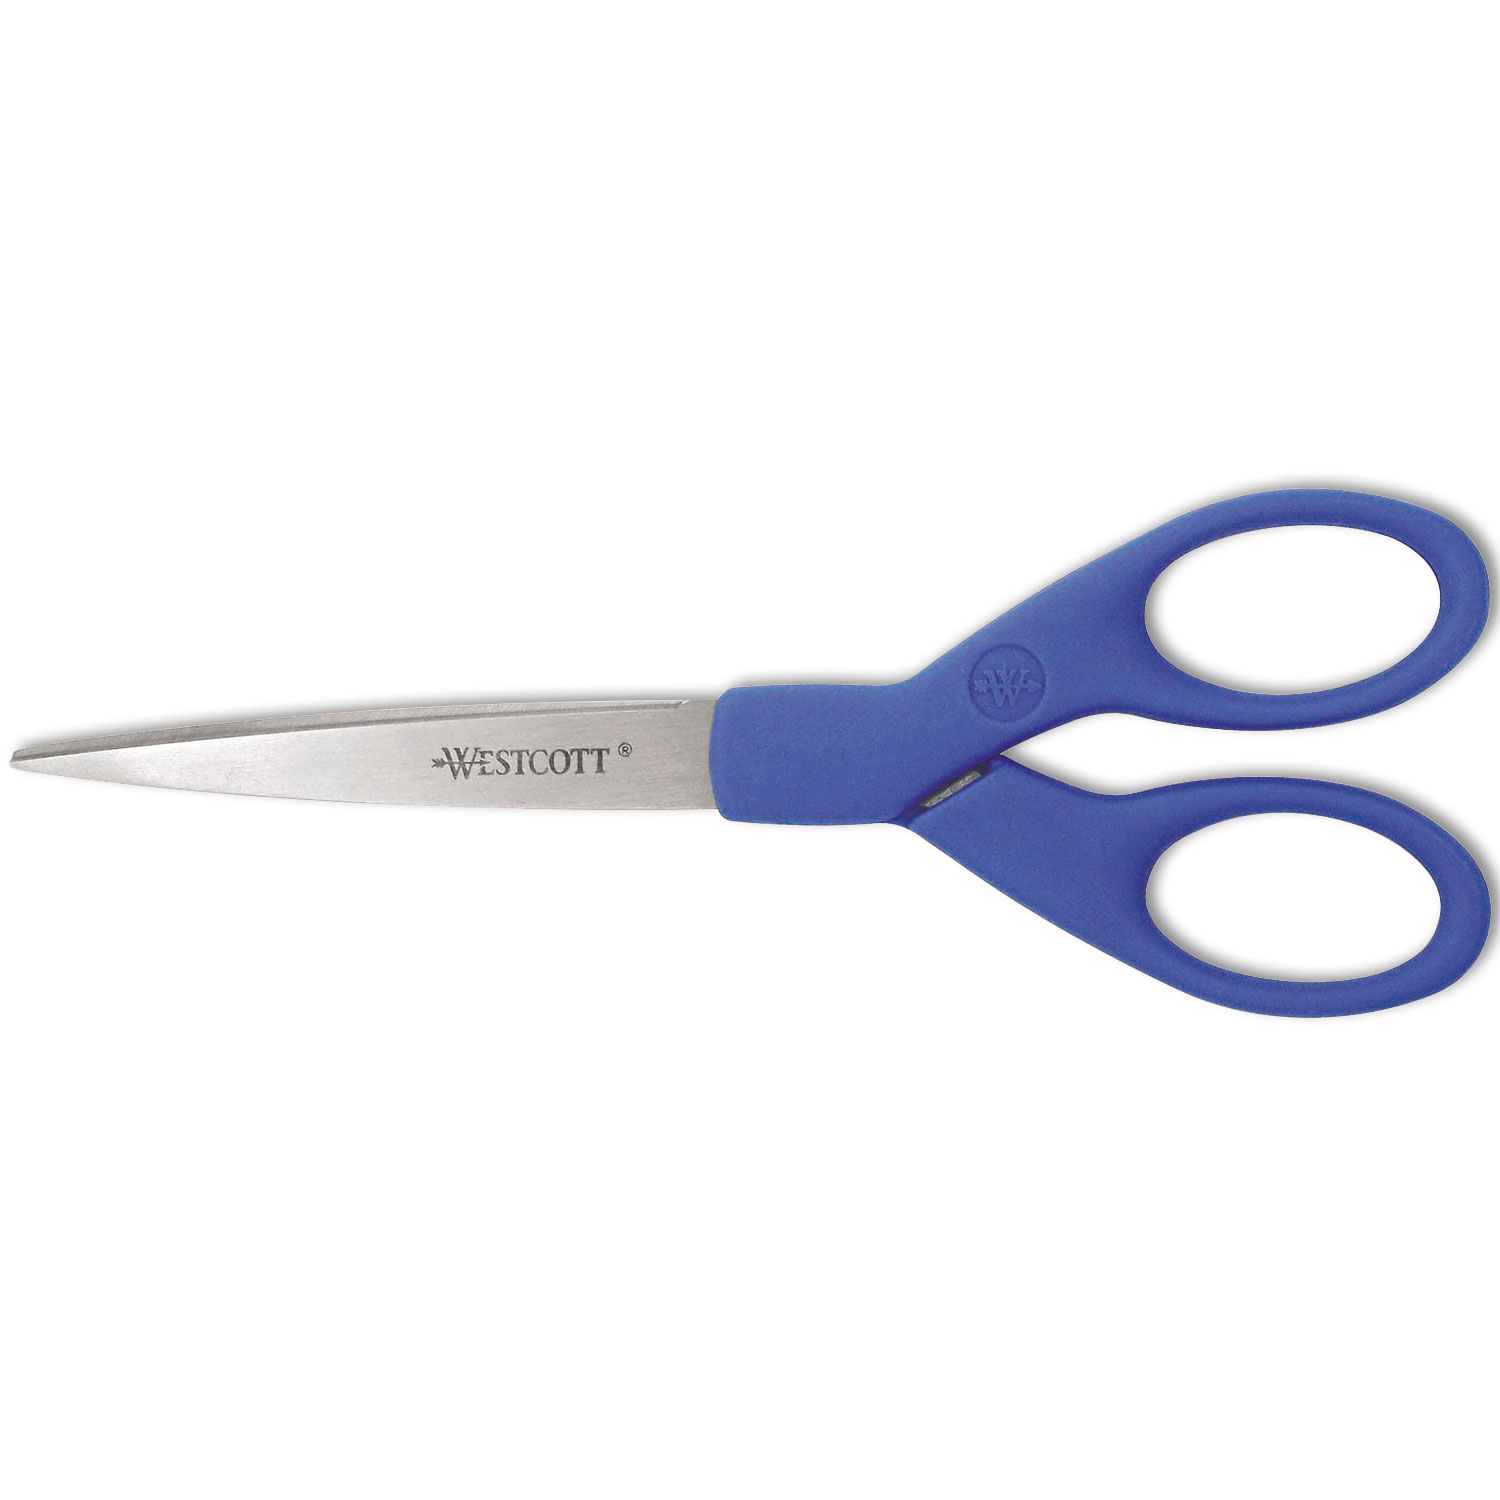 Westcott ACM44217 Preferred Line Stainless Steel Scissors, 7" Long, Blue